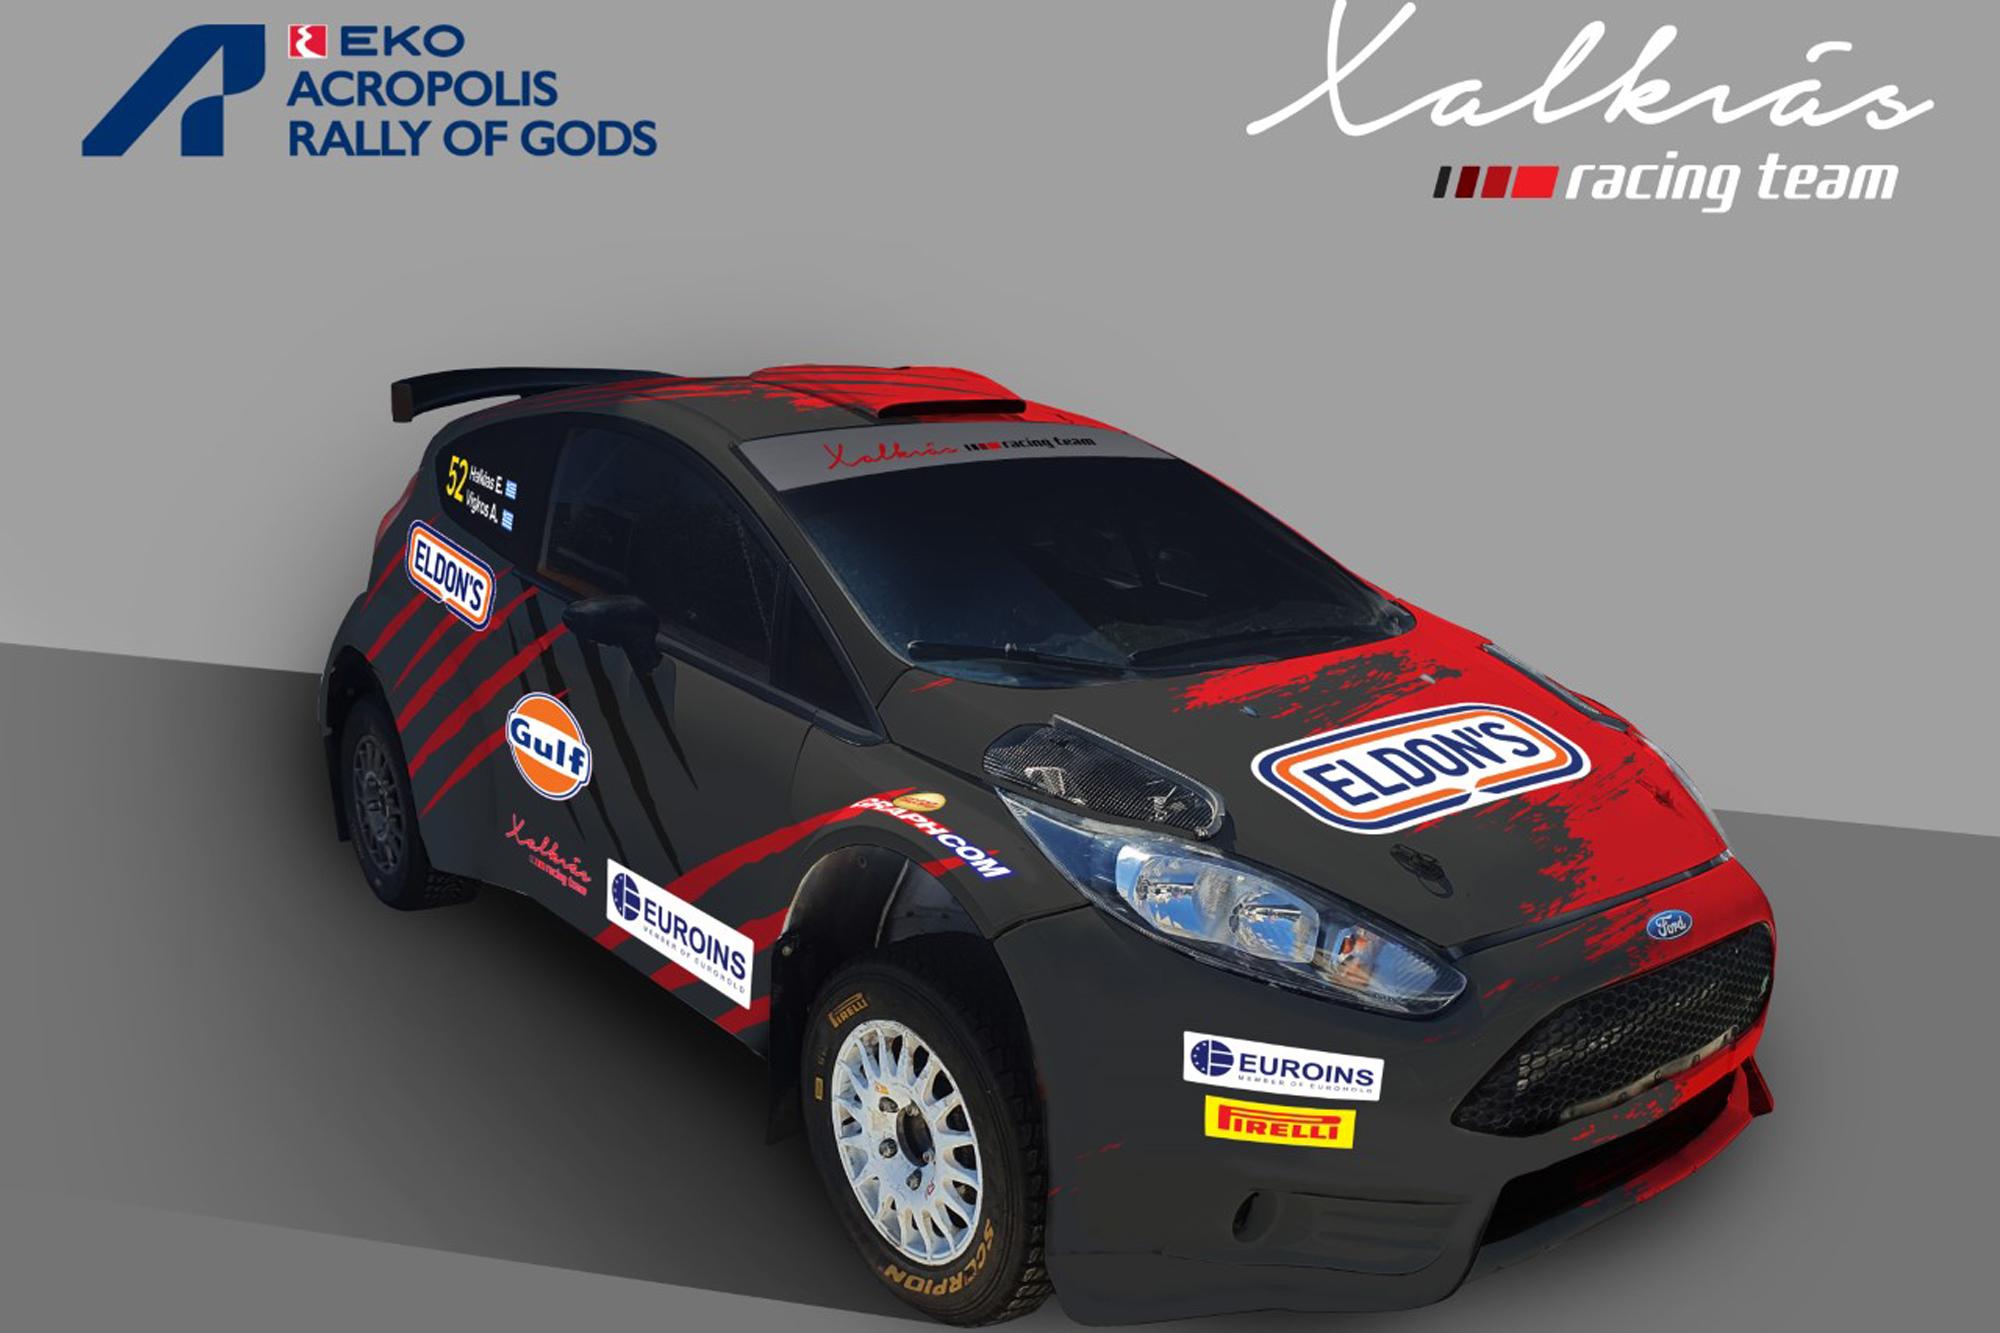 Η Χαλκιάς Racing Team στο Acropolis Rally 2021